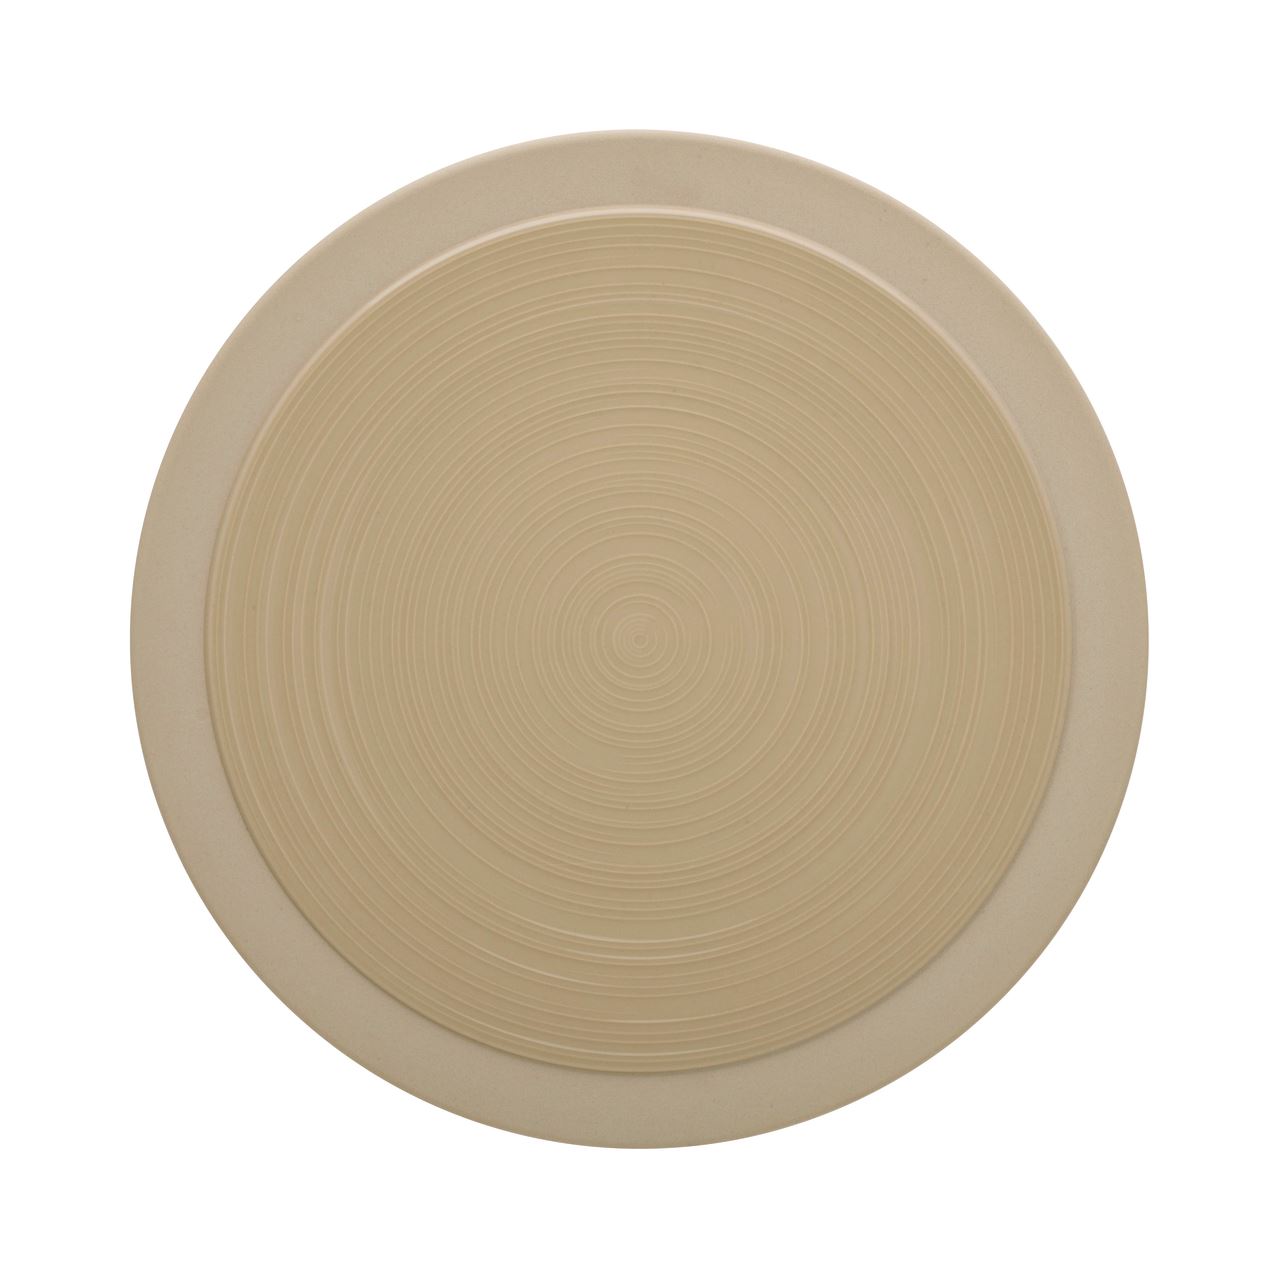 Assiette plate ronde Bahia dune 29 cm Guy Degrenne